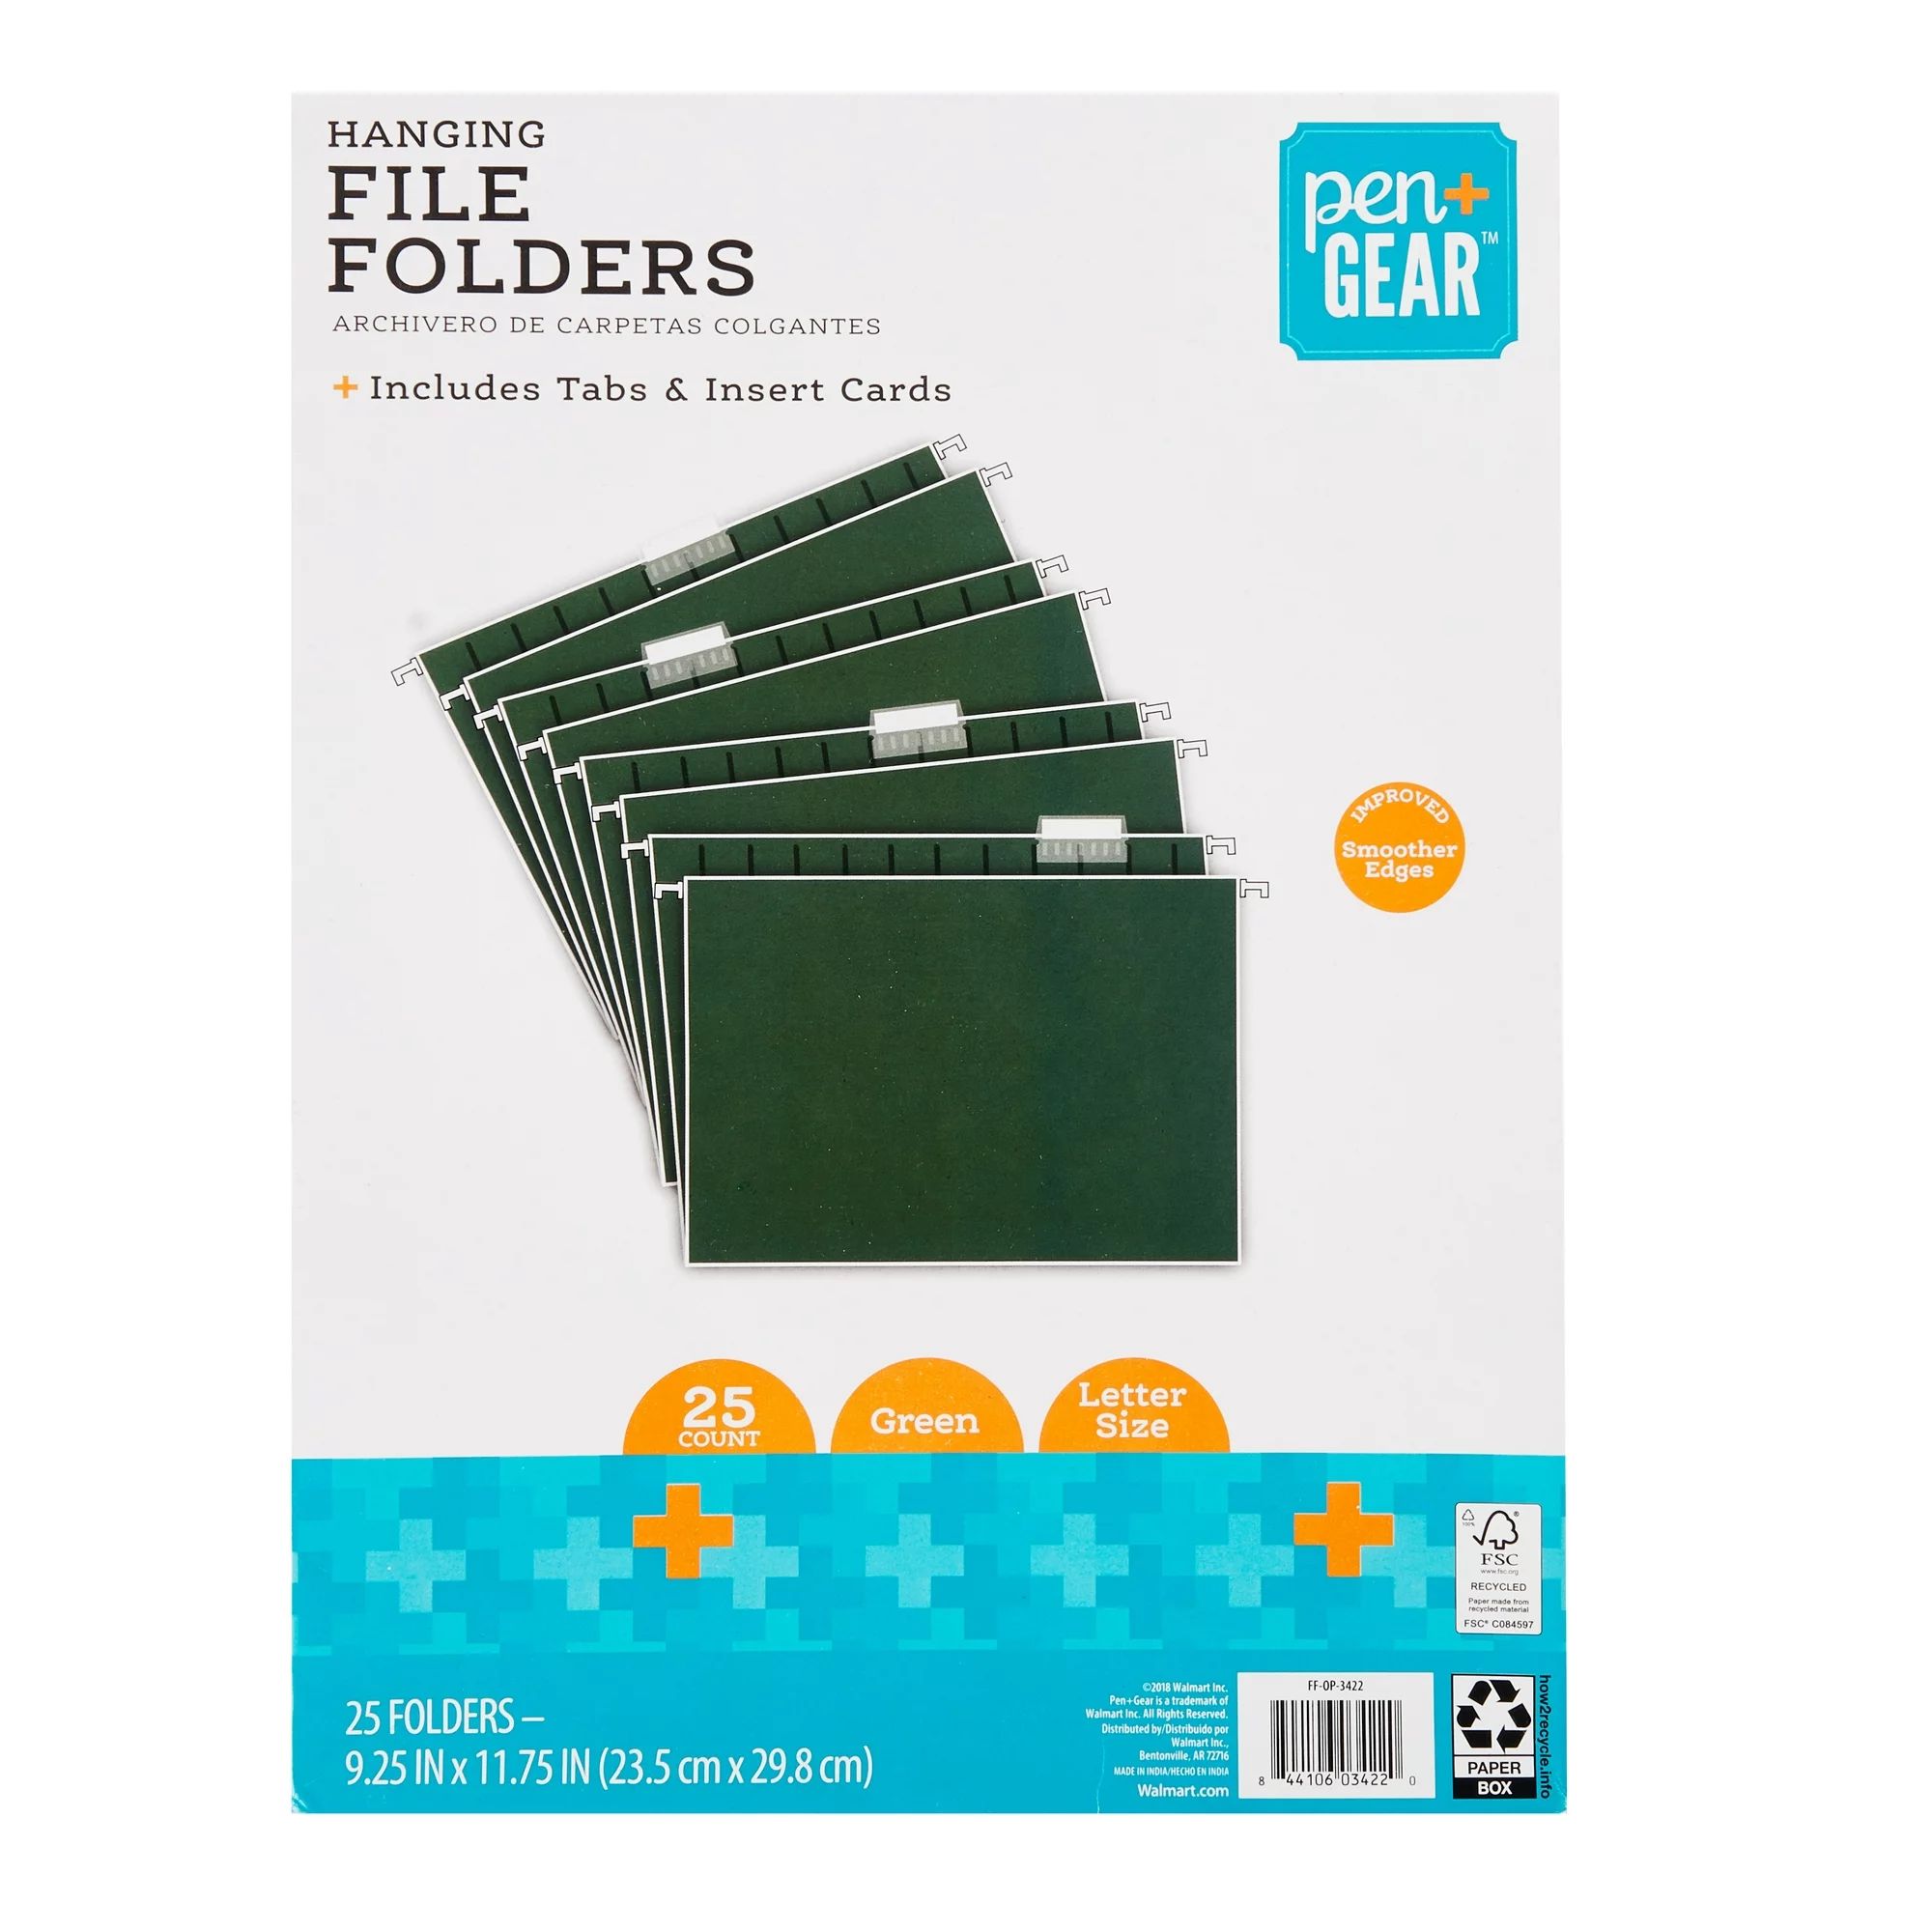 PEN+GEAR Green Letter Size Hanging File Folders, 25 Count - Walmart.com | Walmart (US)